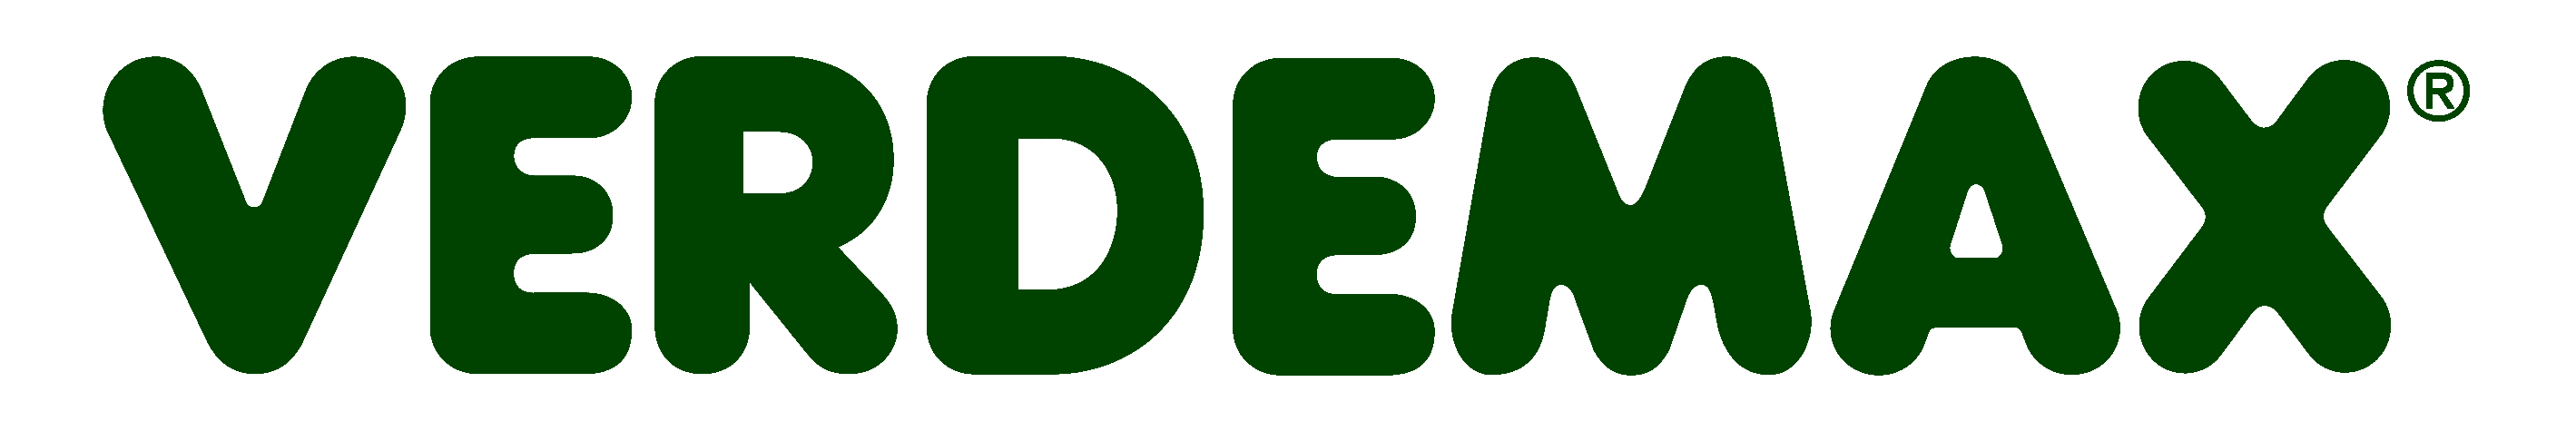 Verdemax logo 2